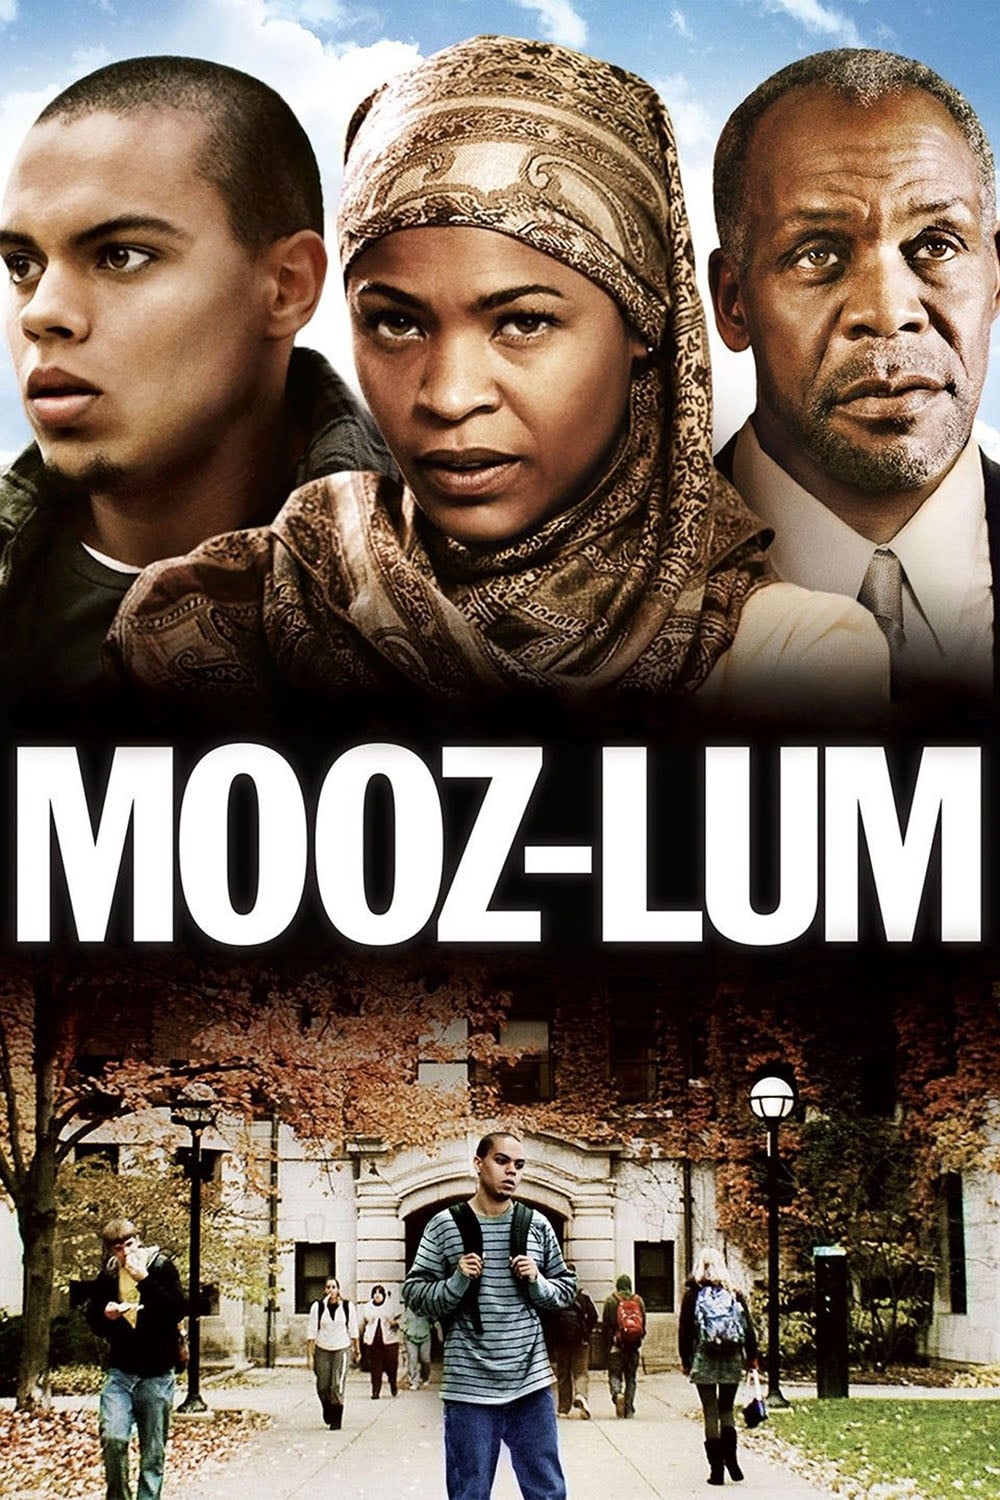 Mooz-lum est-il disponible sur Netflix ou autre ?